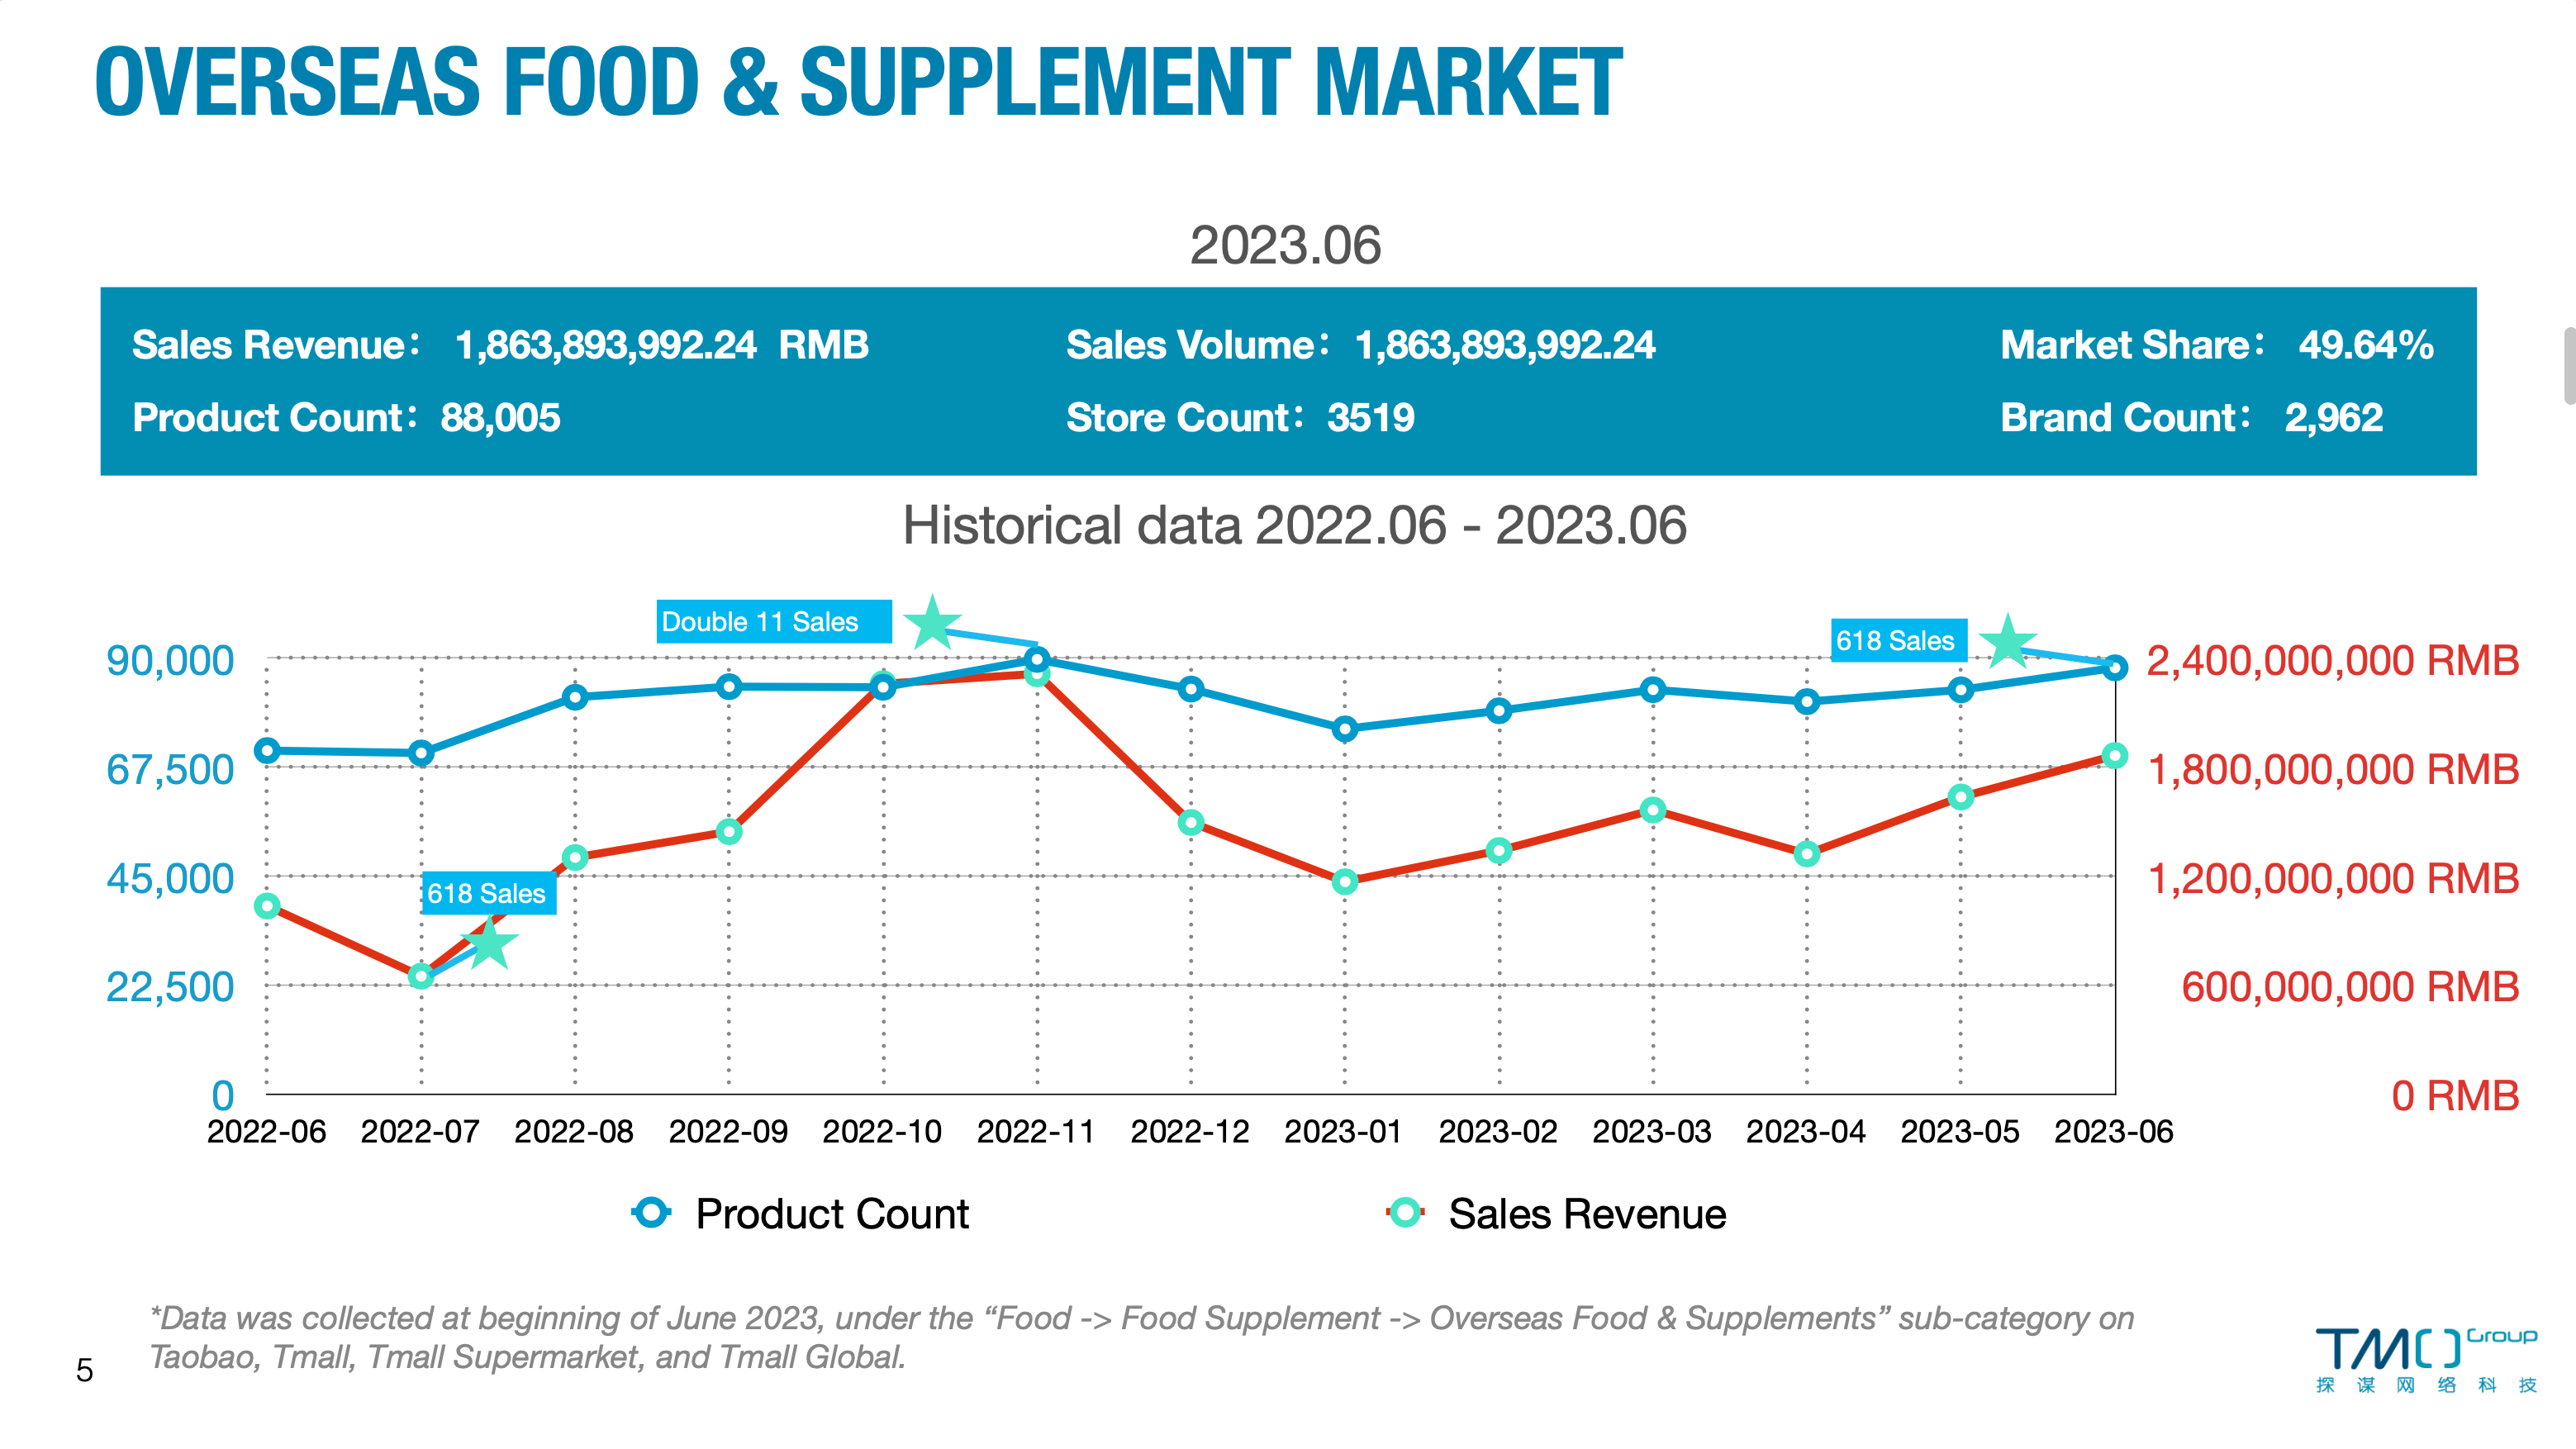 Overseas food & supplement market